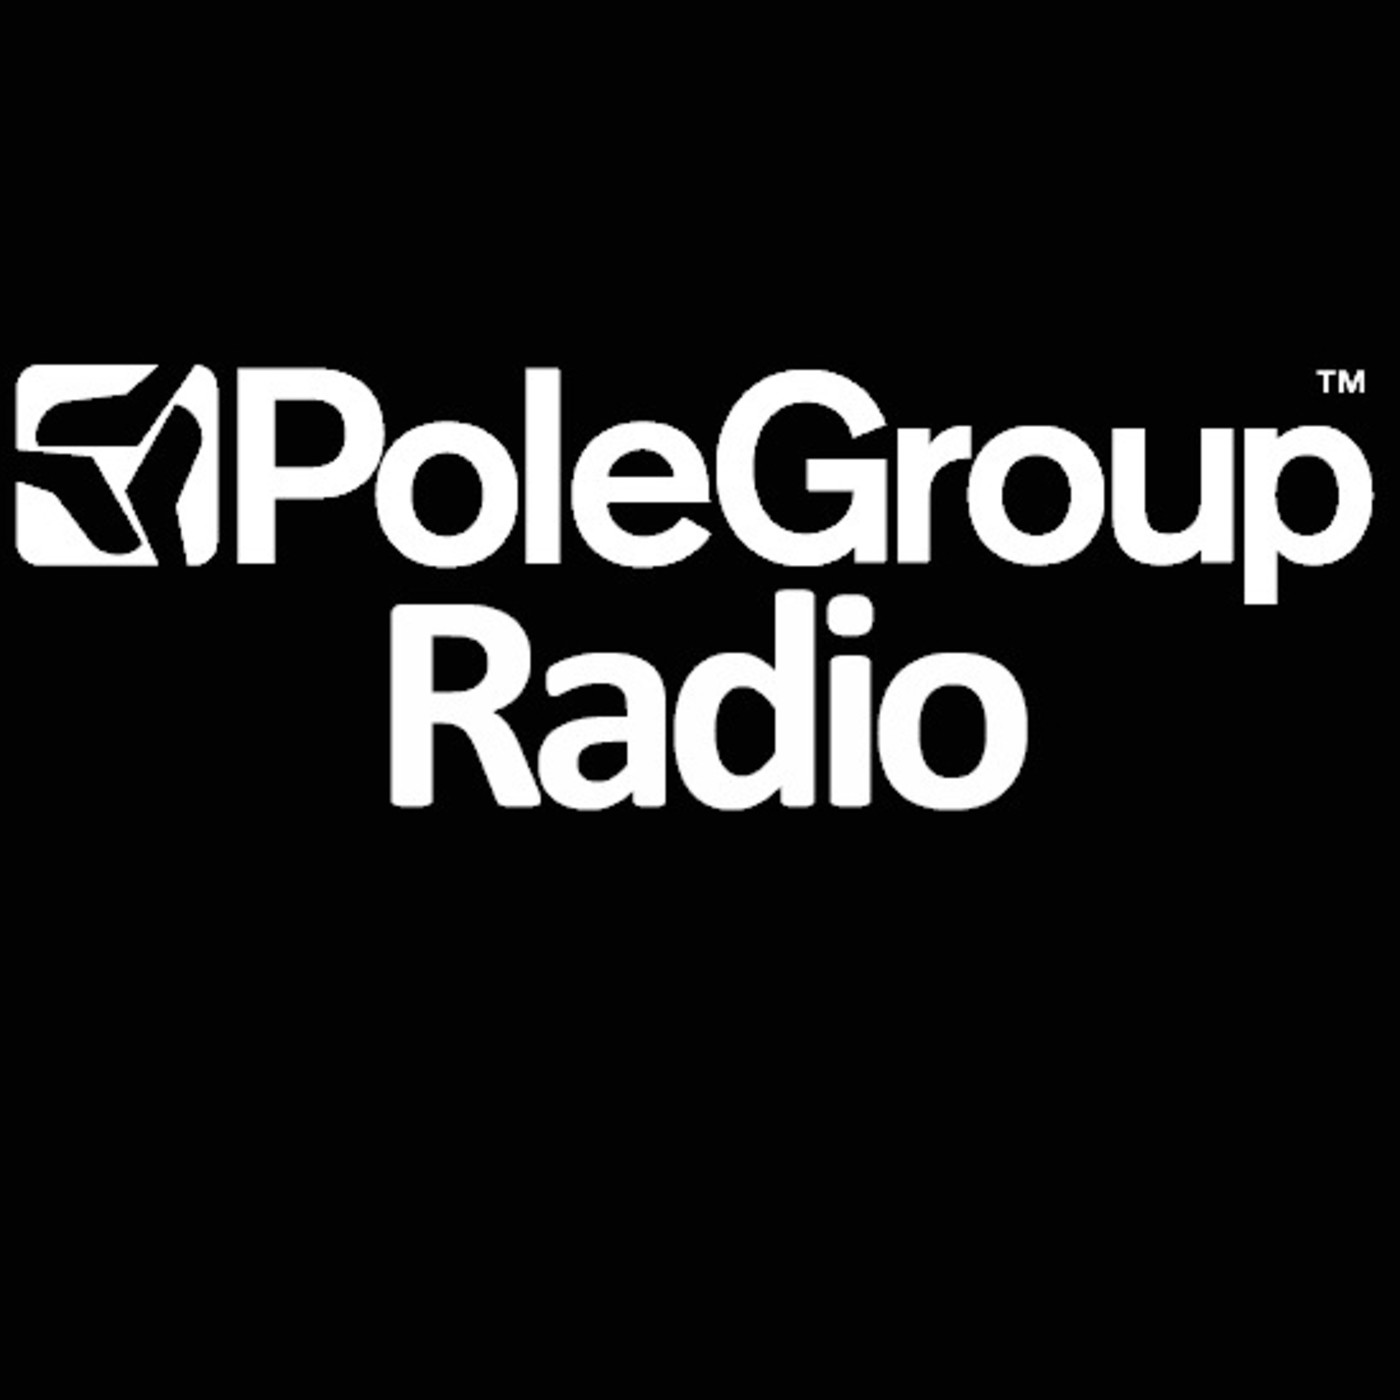 PoleGroup Radio - Ben Sims - 26.03